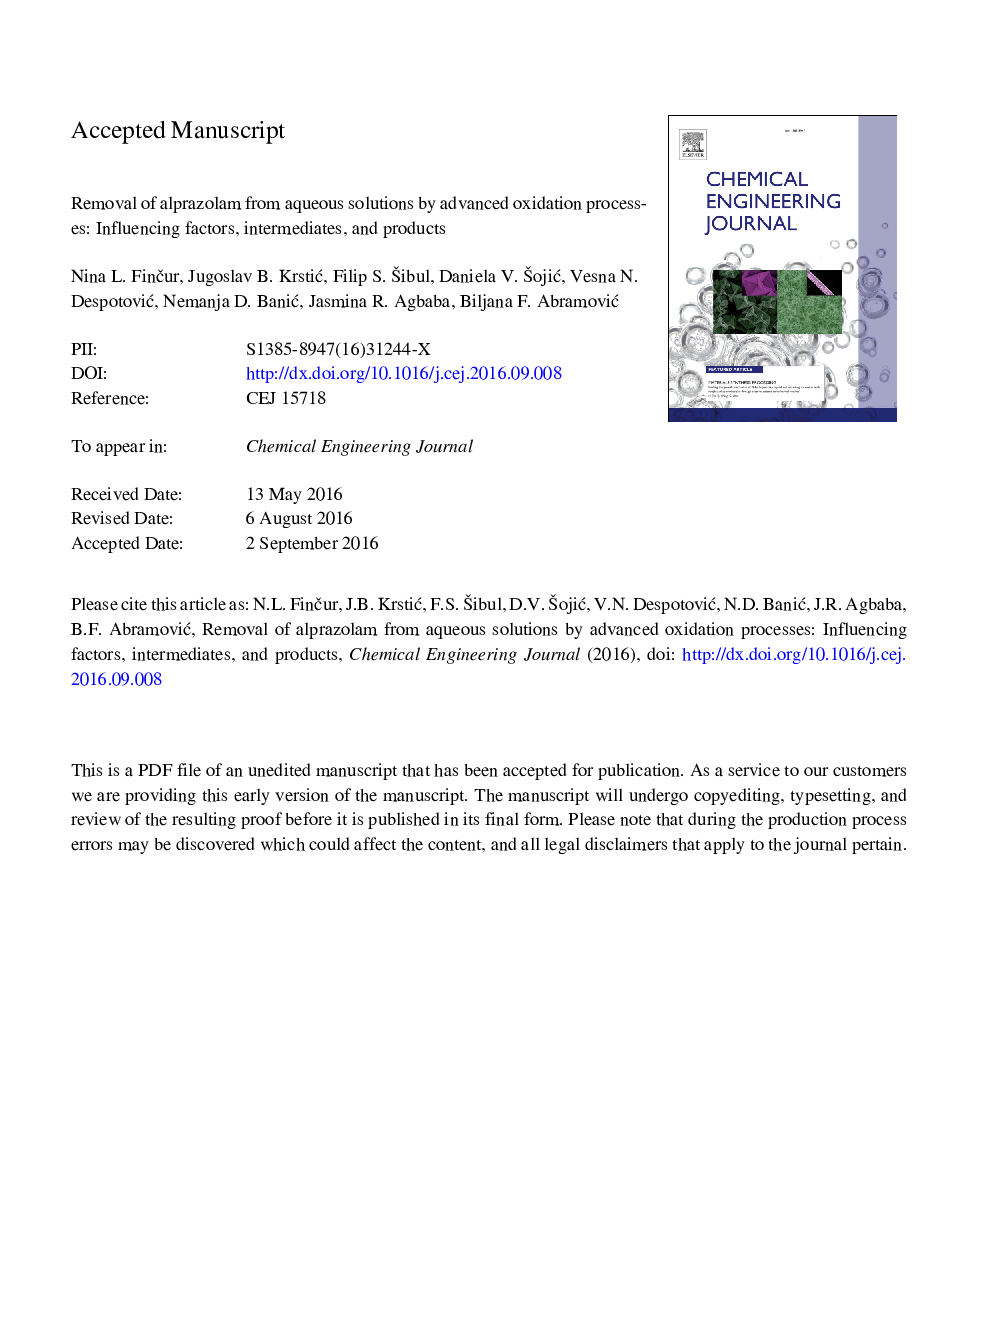 حذف الپرازولام از محلول های آب توسط فوتوکاتالیز ناهمگن: عوامل موثر، میان و محصولات 